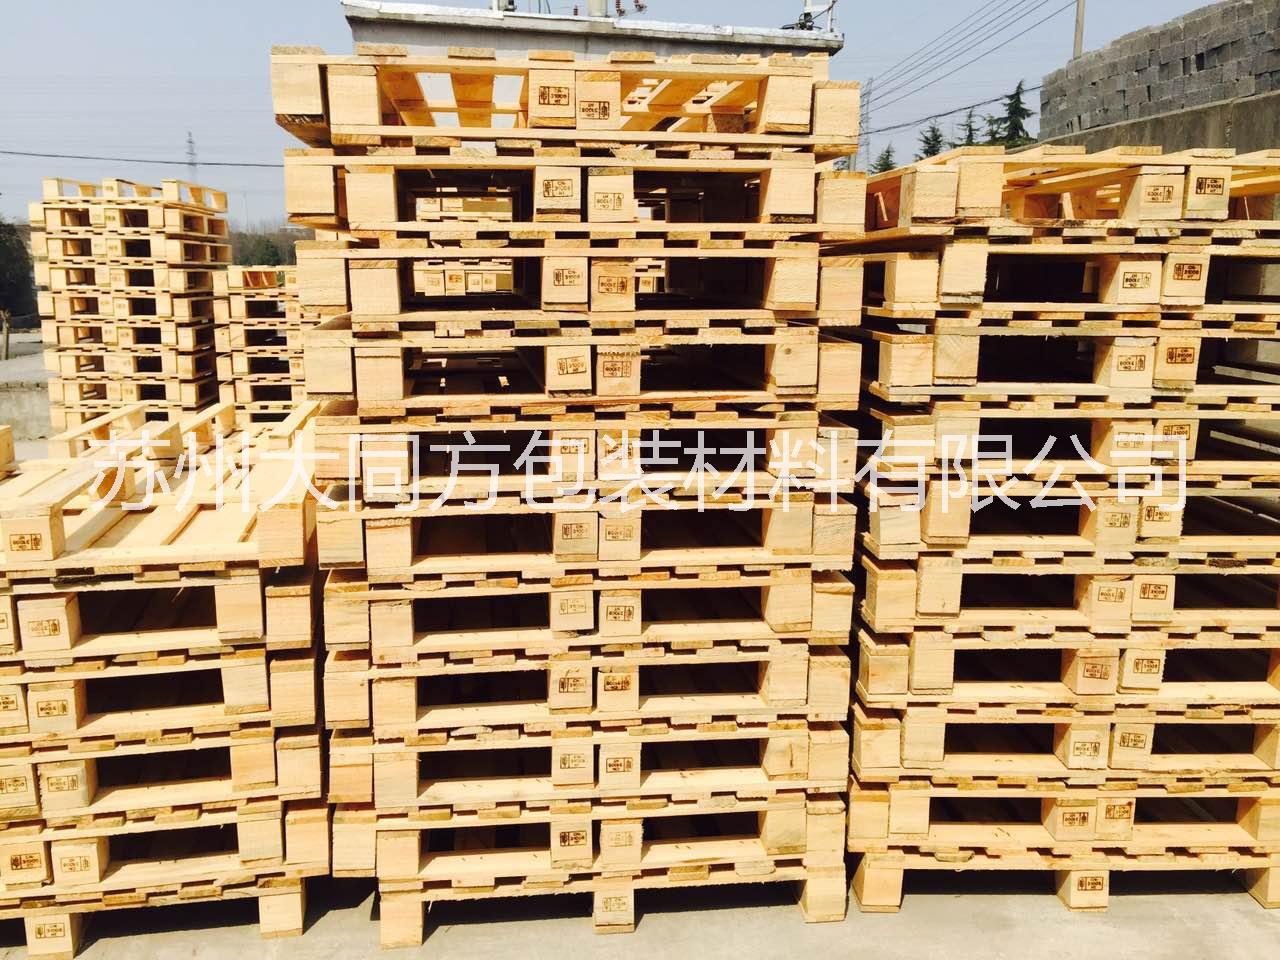 熏蒸木栈板厂家批发价格，上海、江苏昆山出口熏蒸托盘供应报价，